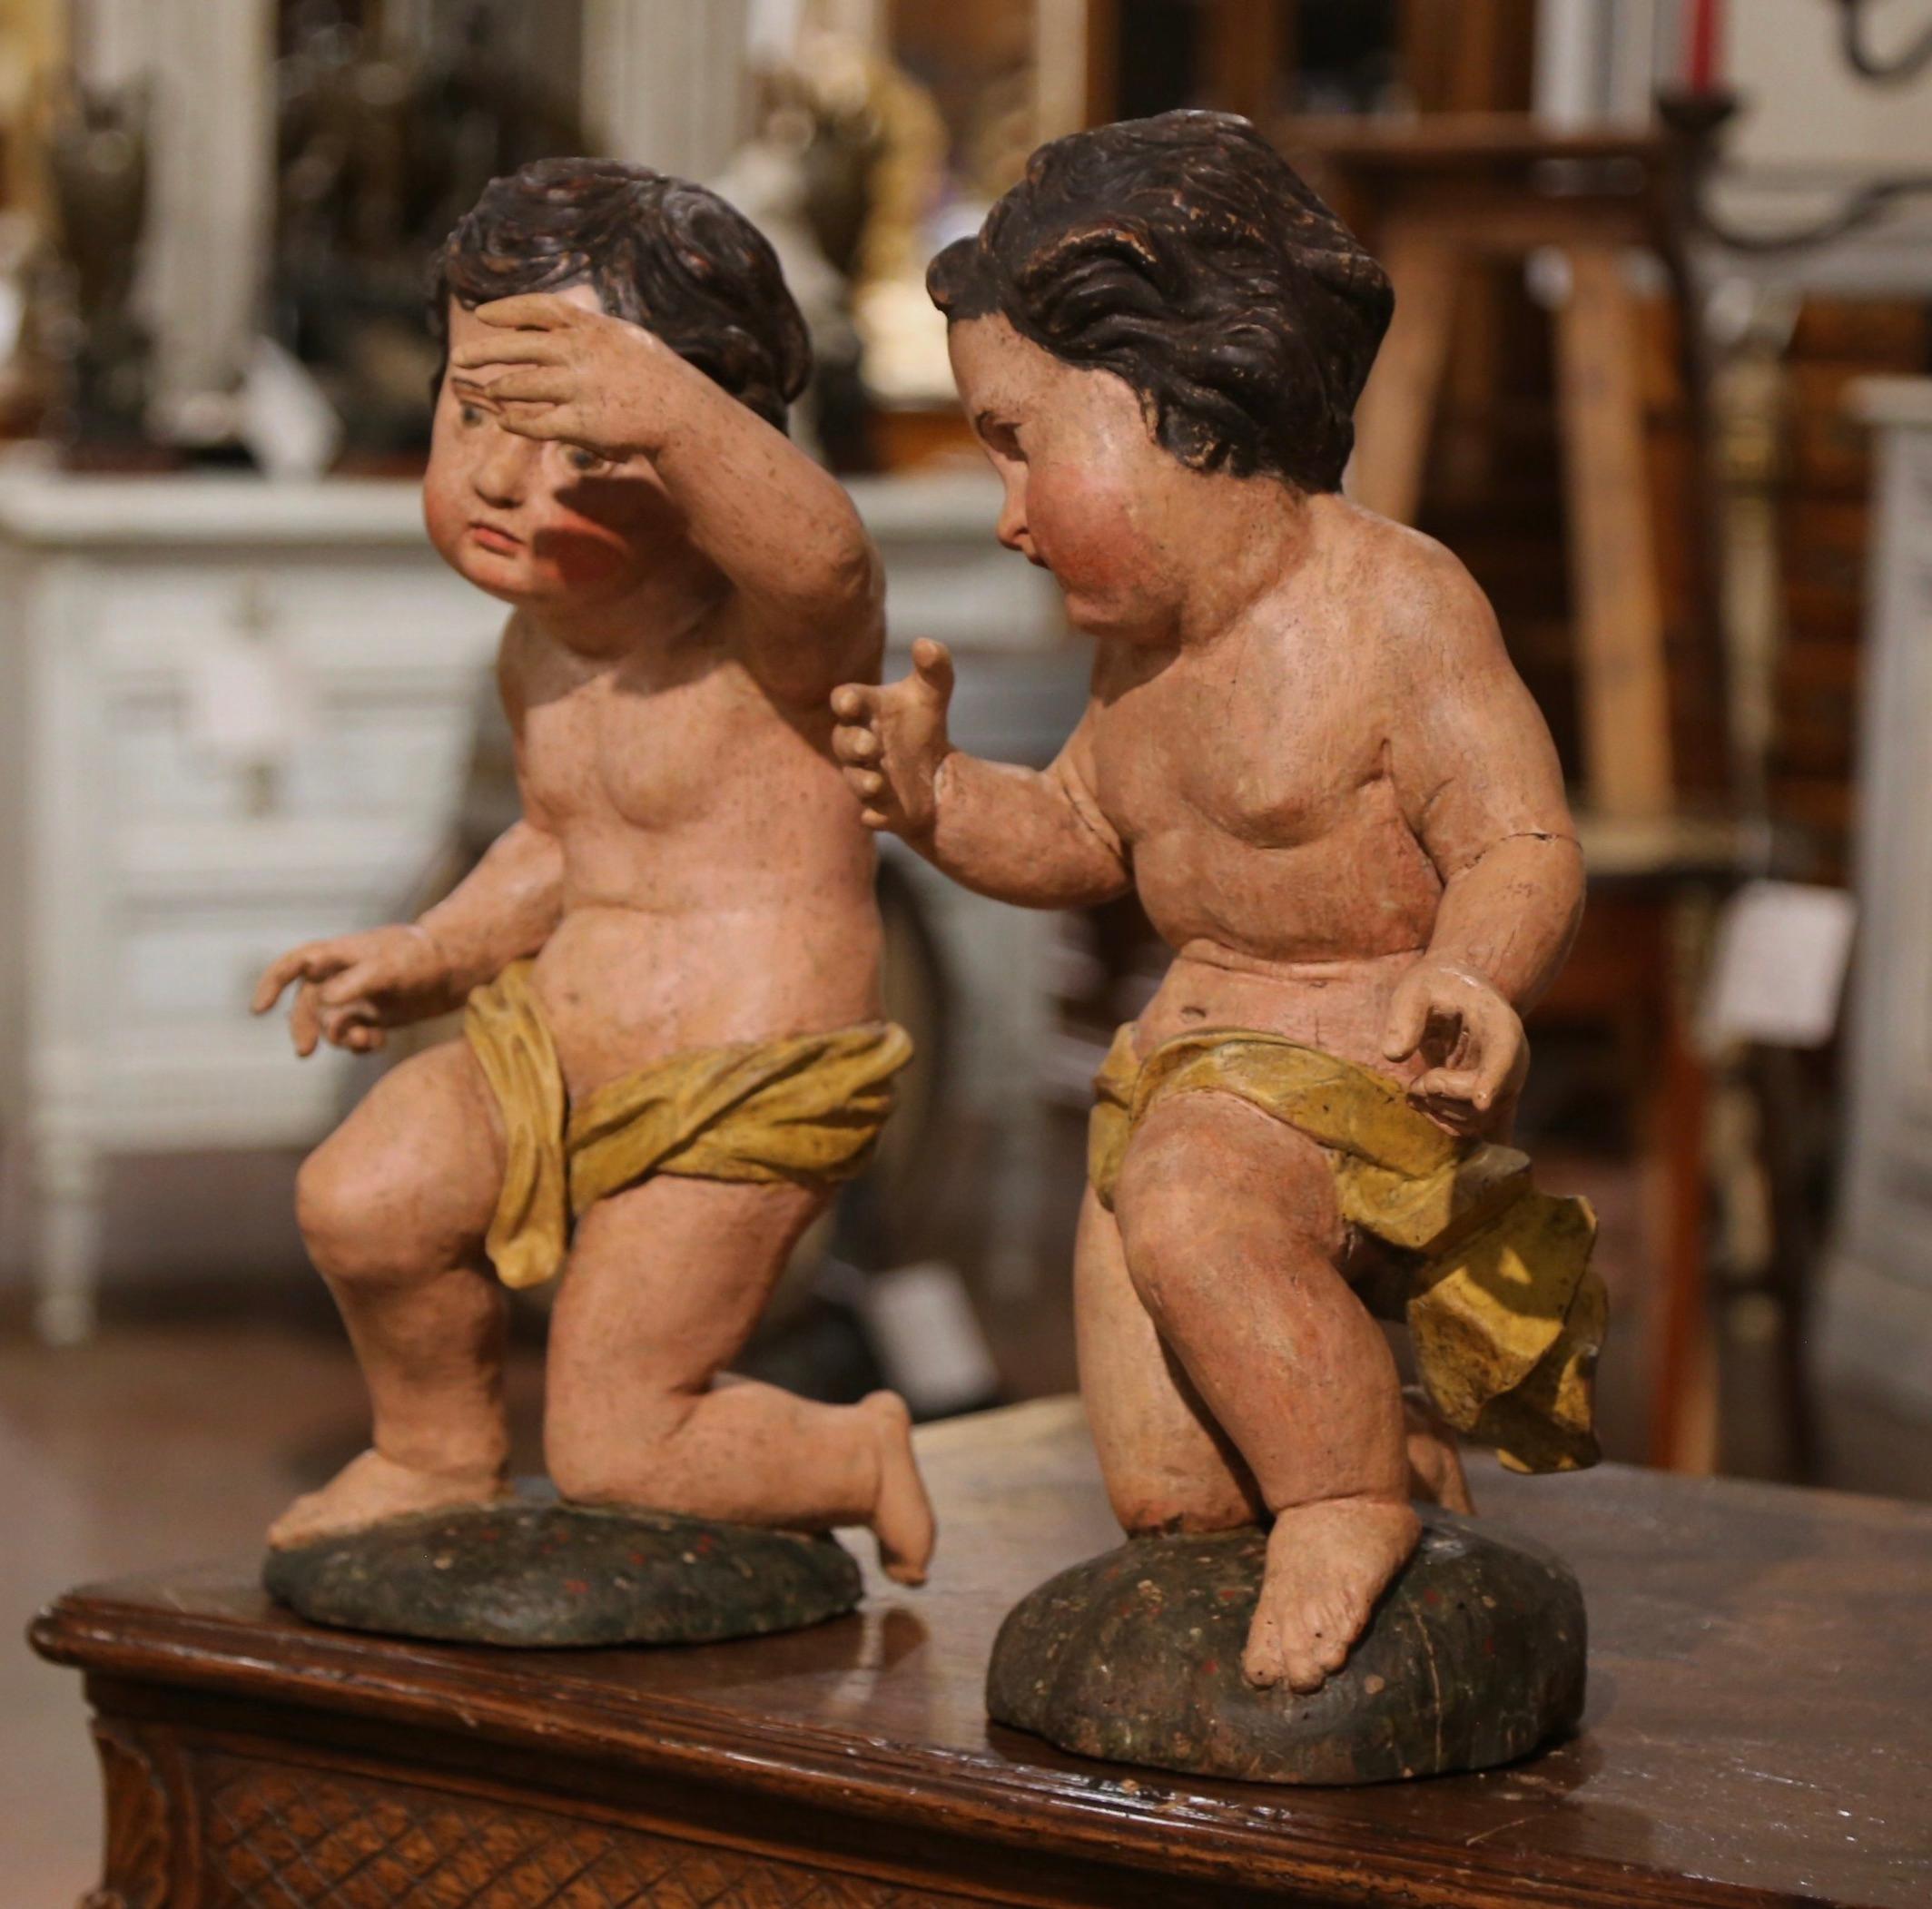 Ces charmantes sculptures anciennes de putti ont été réalisées en Italie, vers 1780. Les figures sculptées à la main représentent deux cupidons joufflus reposant sur un genou et tenant un bras en l'air. Chaque sculpture présente sa finition